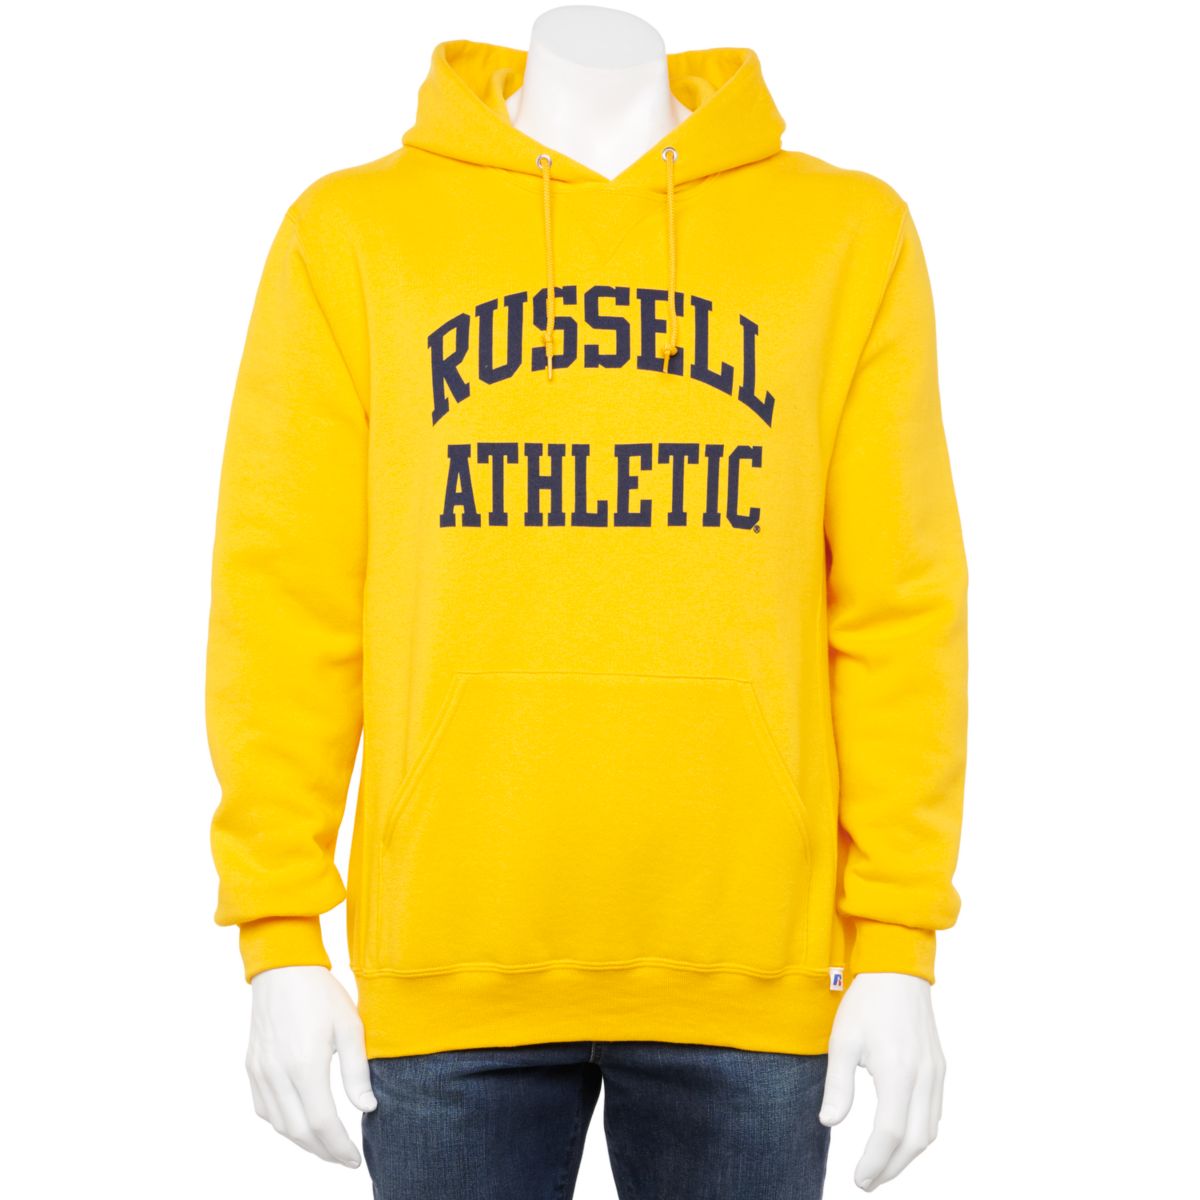 Мужская флисовая толстовка с капюшоном Russell Athletic Dri-Power RUSSELL ATHLETIC